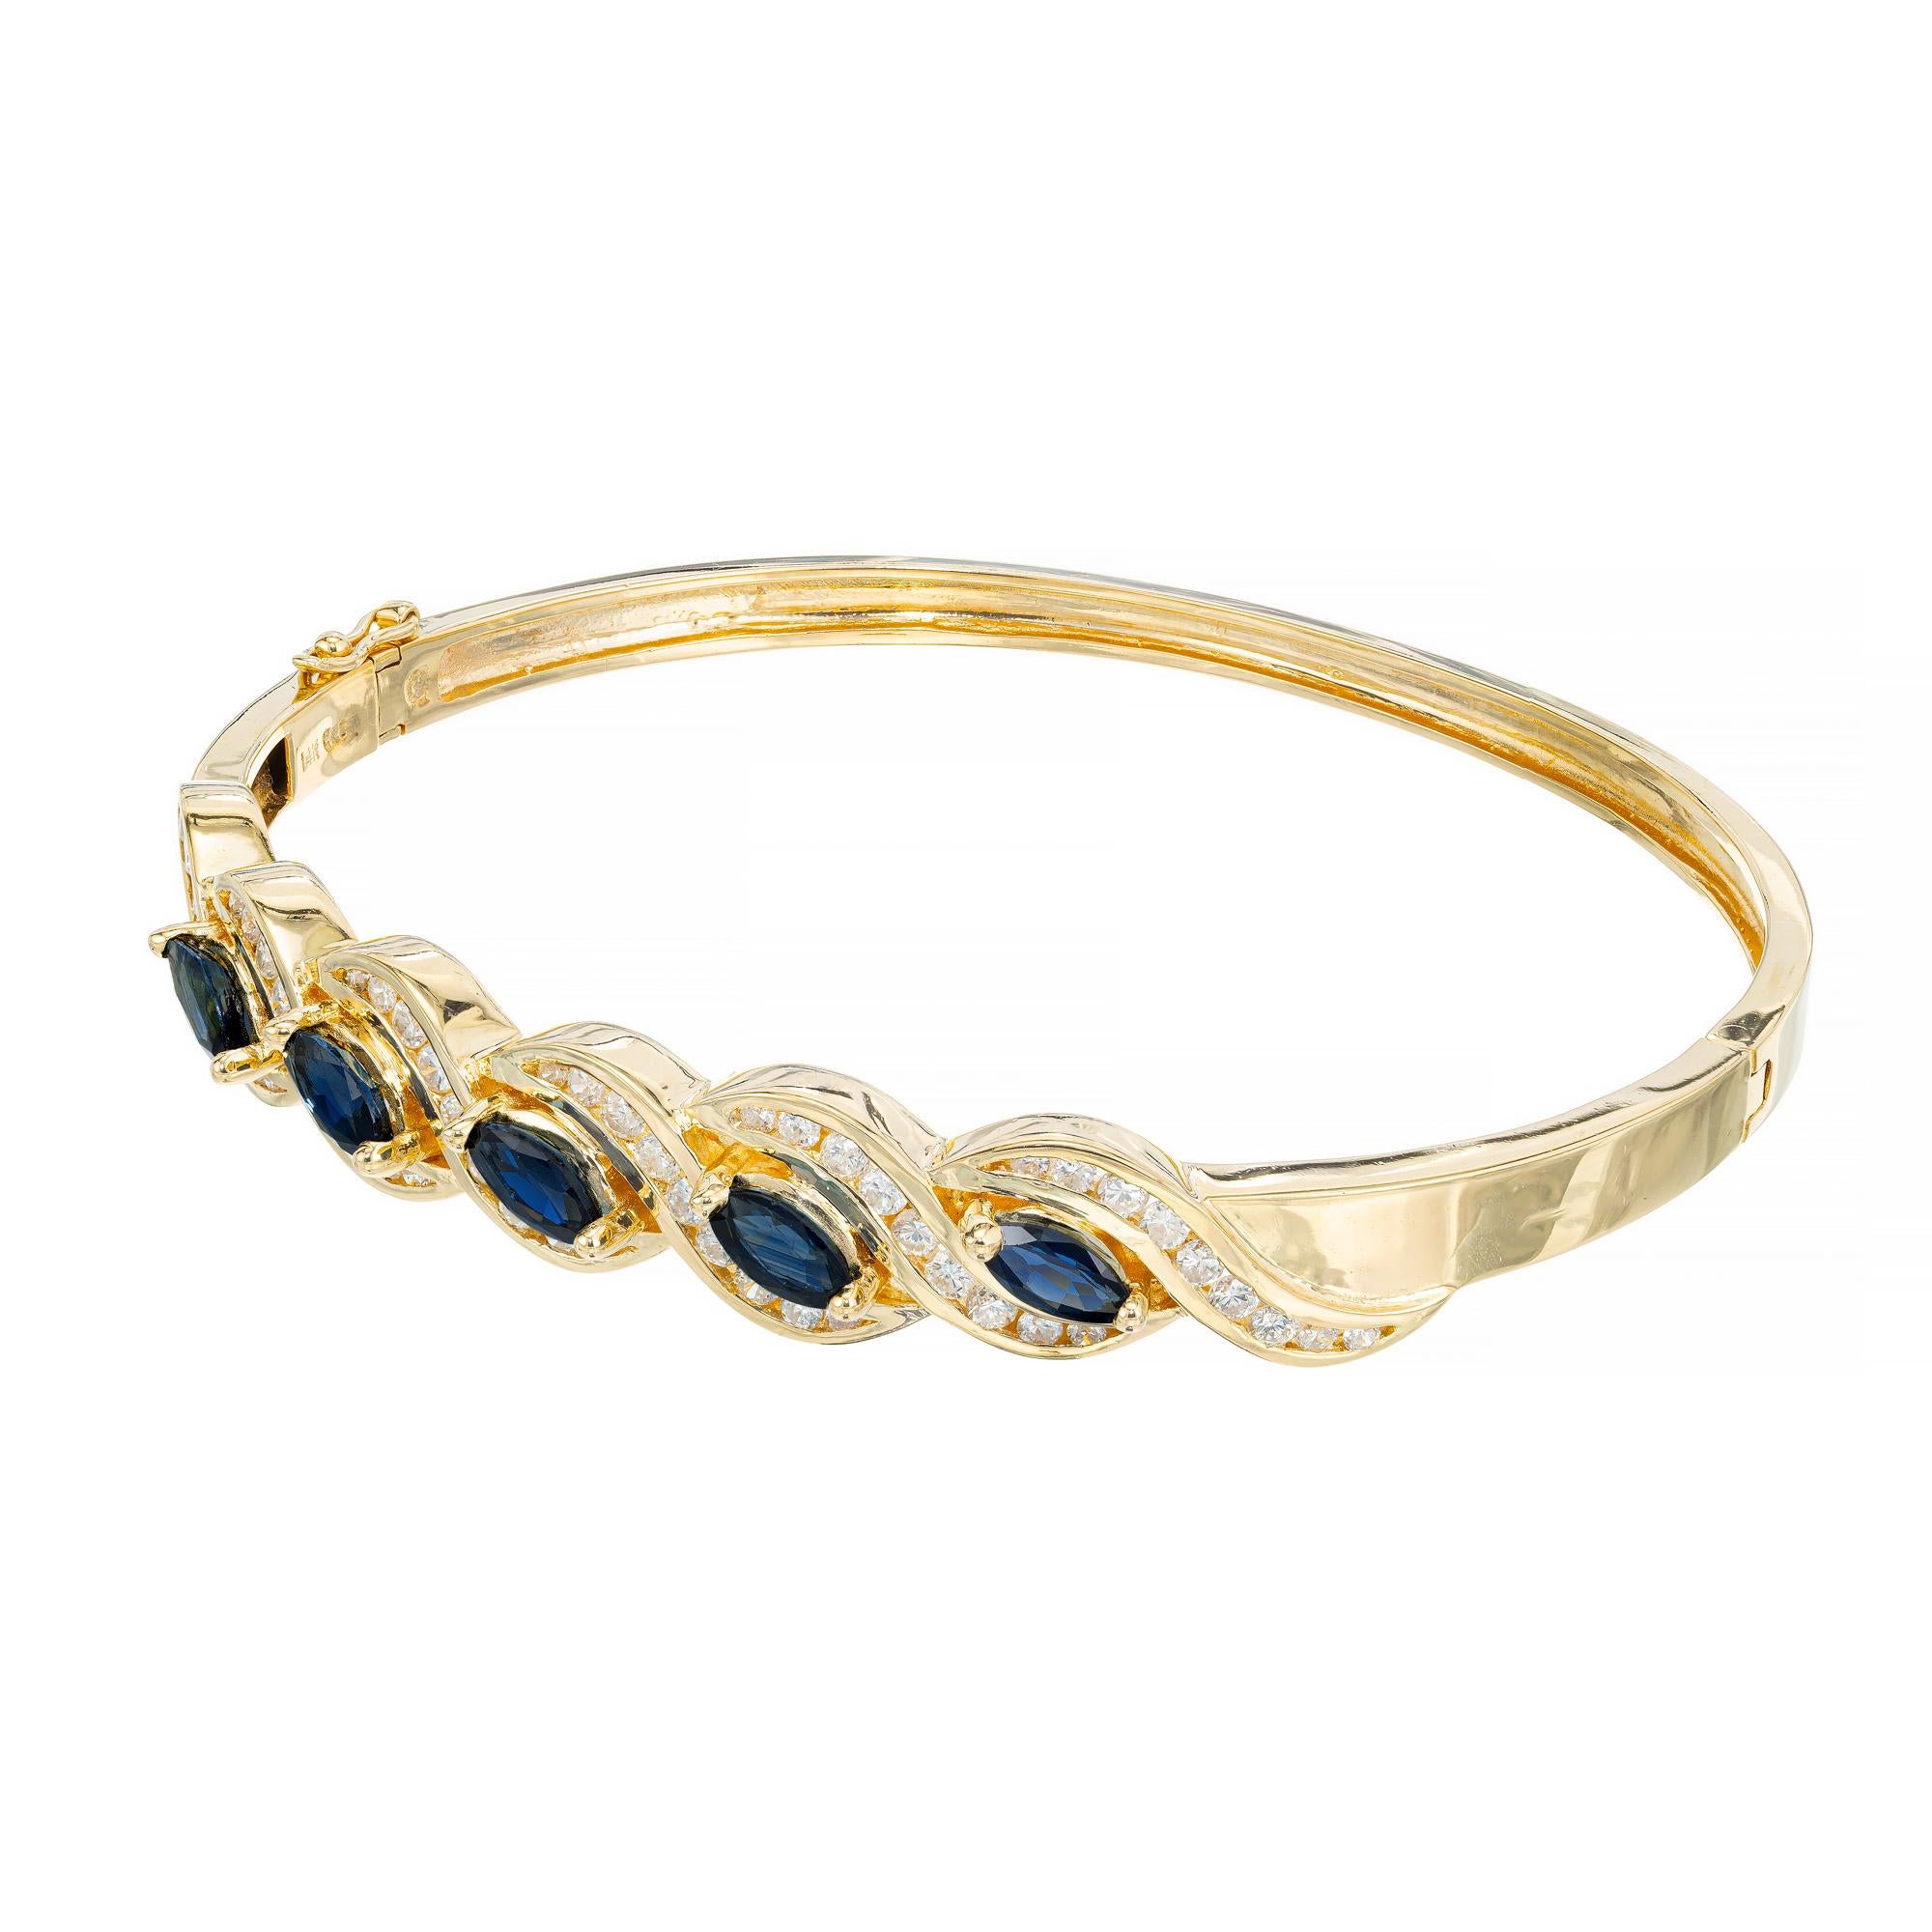 Bracelet en saphir et diamant. 5 saphirs marquises sertis en biais totalisant 1,75 ct sont montés dans un bracelet en or jaune 14k, avec un halo de 54 diamants ronds en forme de tourbillon. Ce bracelet est muni d'un fermoir de sécurité en forme de